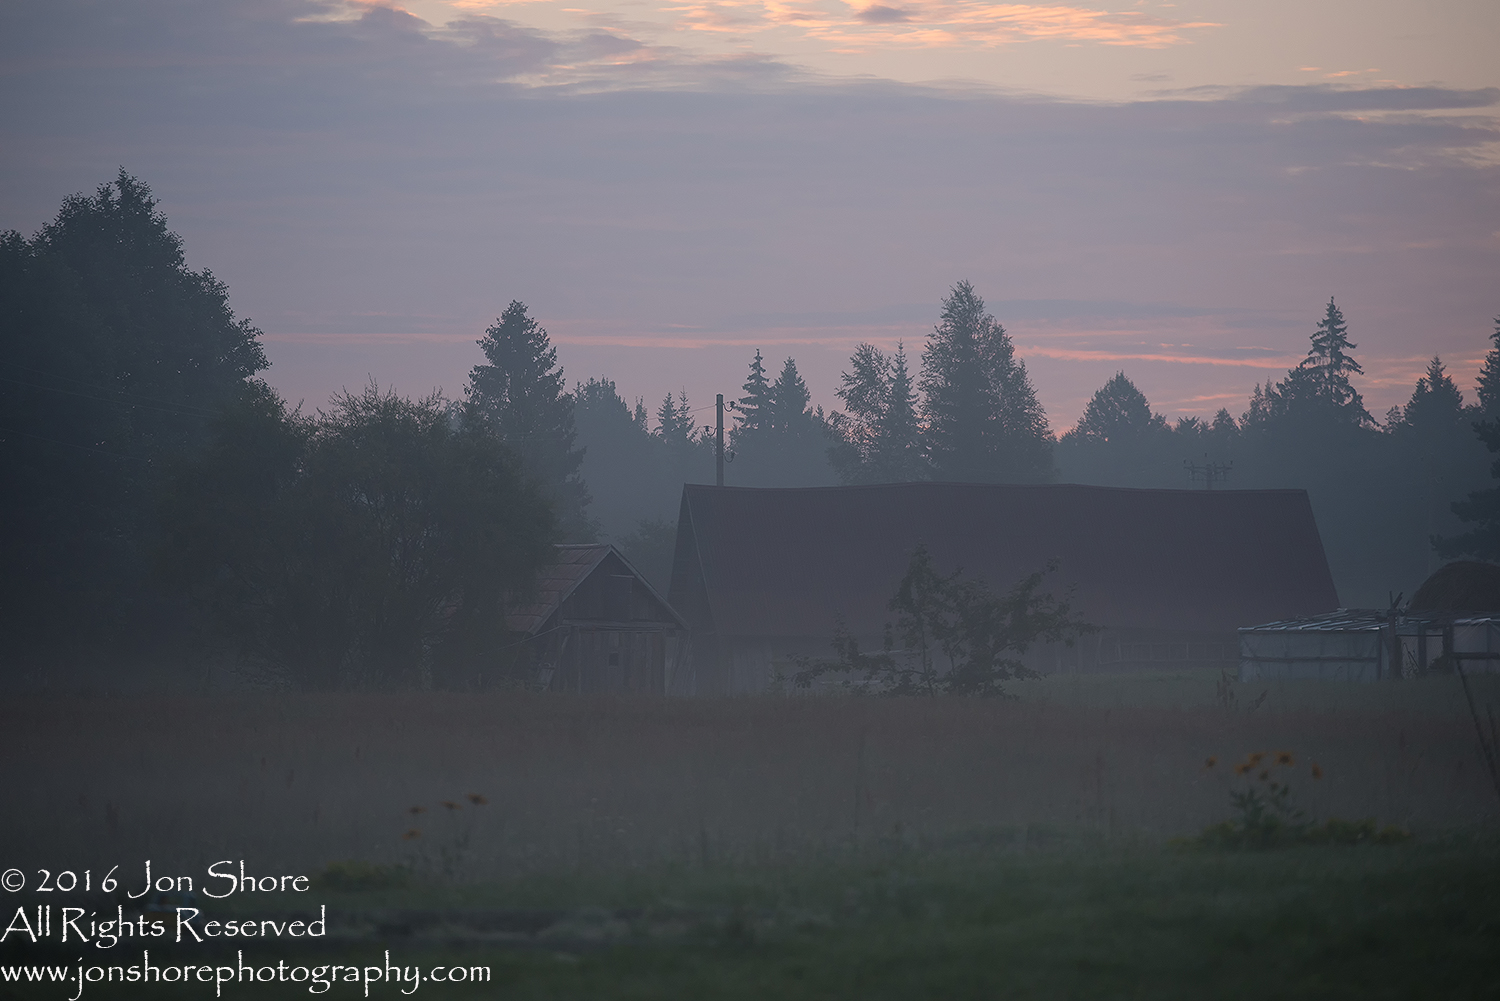 Latgale Farm in the Fog. Latvia. Tamron 200mm